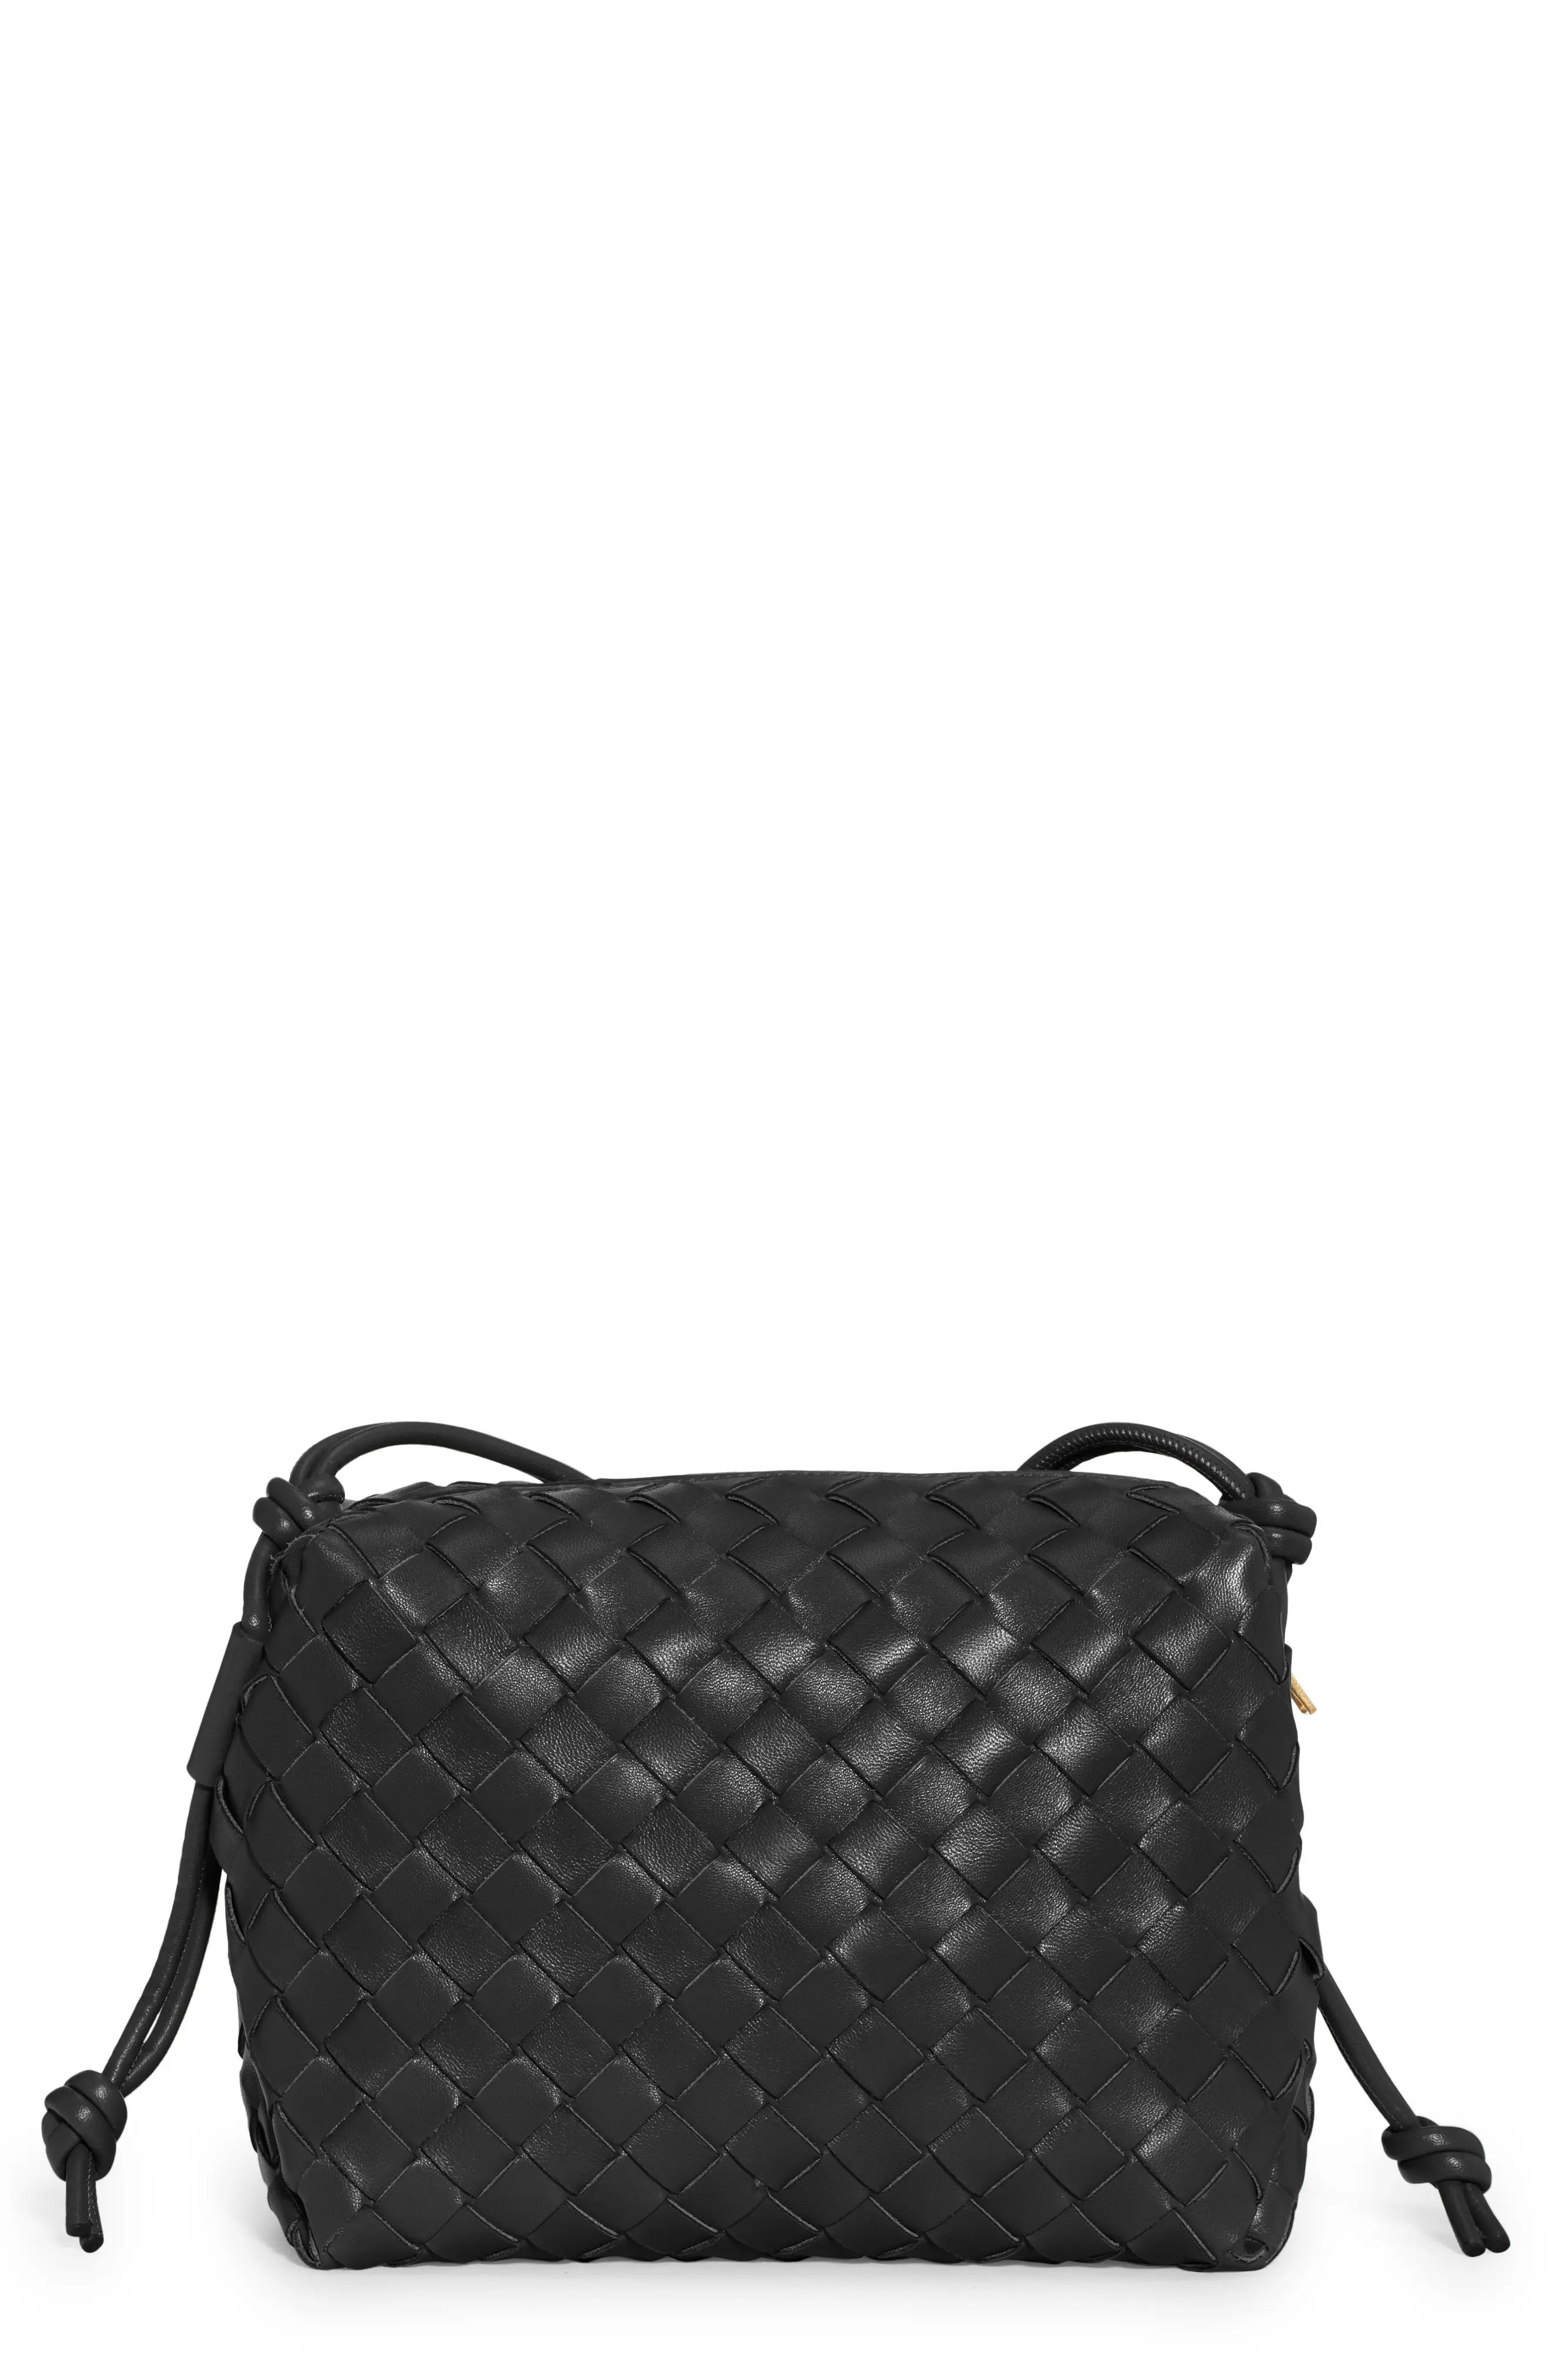 Bottega Veneta Small Intrecciato Leather Shoulder Bag in Black Gold at Nordstrom | Nordstrom